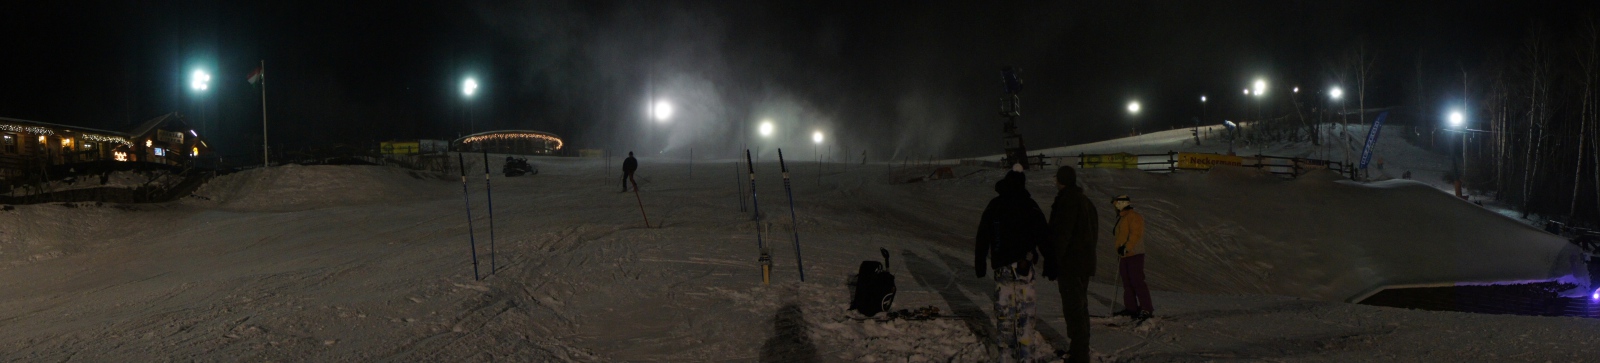 Extra Night Slalom edzés volt a Síparkban!